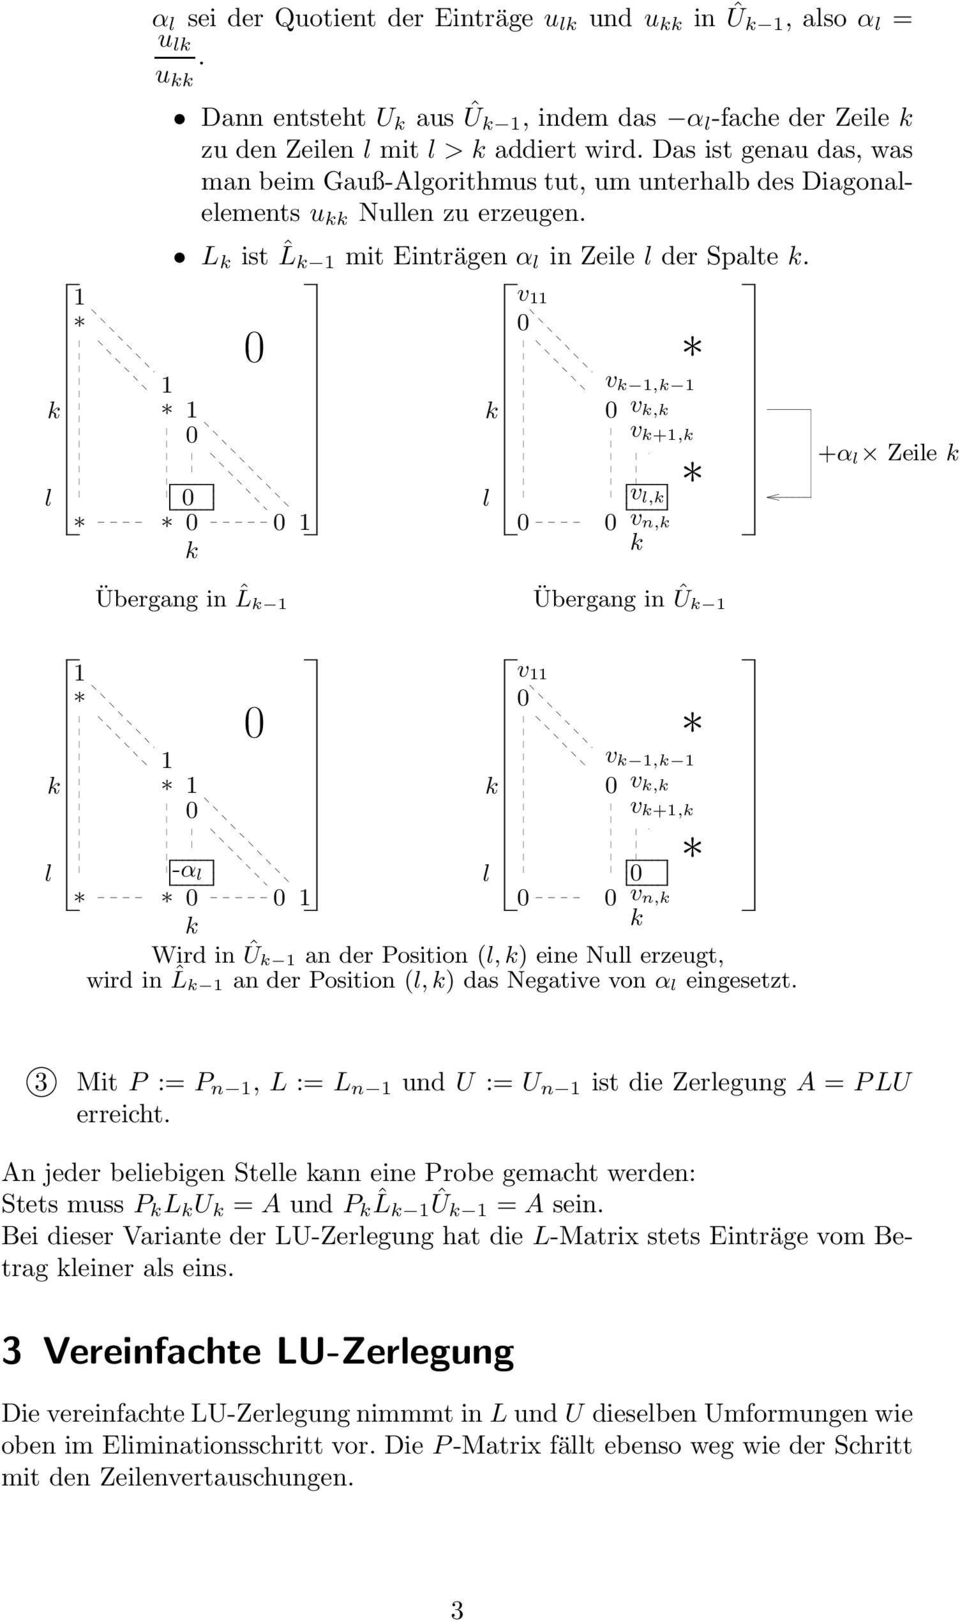 l v v, v, v +, v l, v n, +α l Zeile Übergang in ˆL Übergang in Û l v v, v, v +, -α l l v n, Wird in Û an der Position (l,) eine Null erzeugt, wird in ˆL an der Position (l,) das Negative von α l